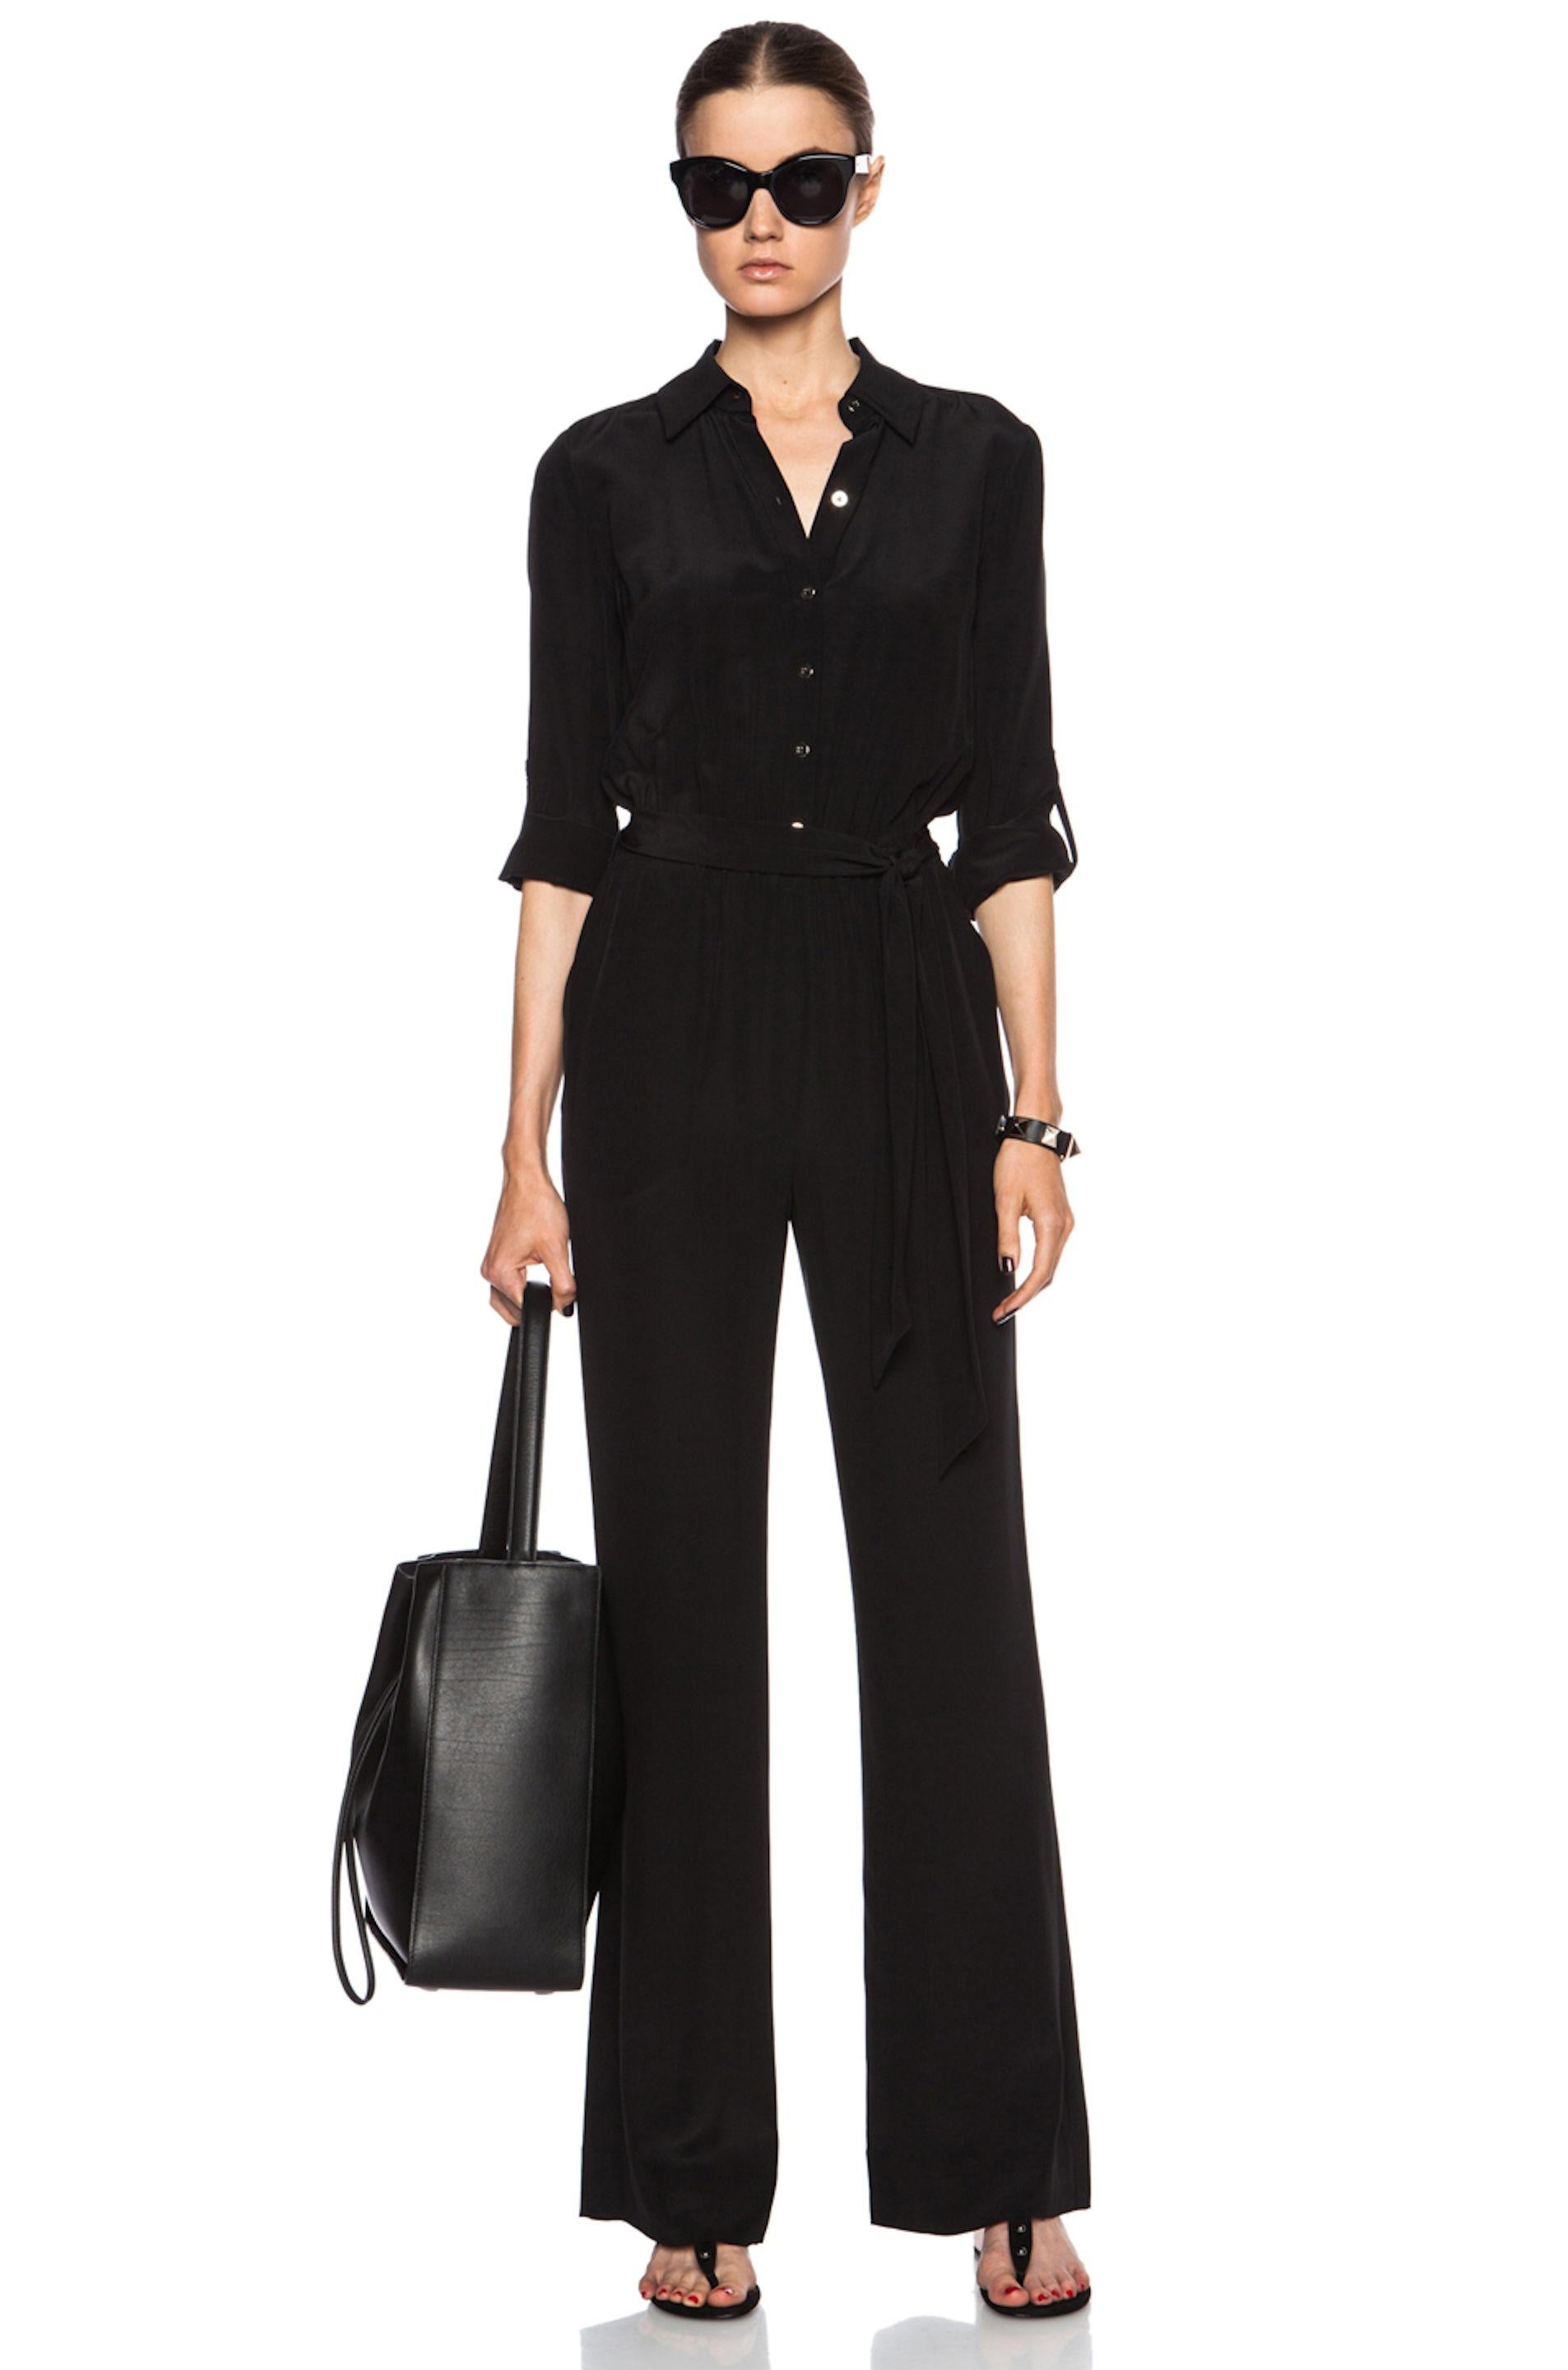 NEW DVF Diane von Furstenberg Black Silk Jumpsuit Overall Size US8 3